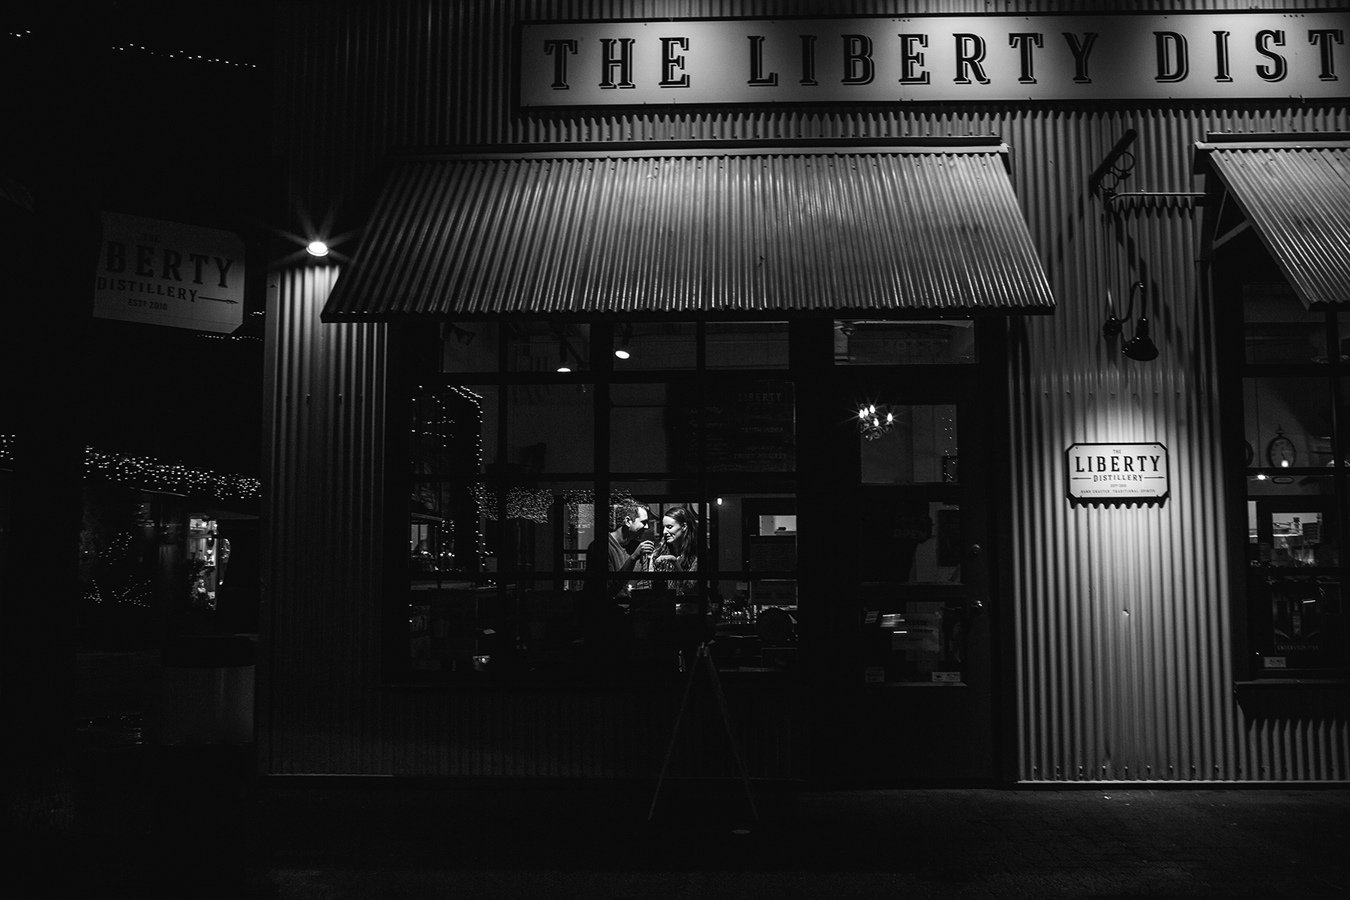 liberty distillery